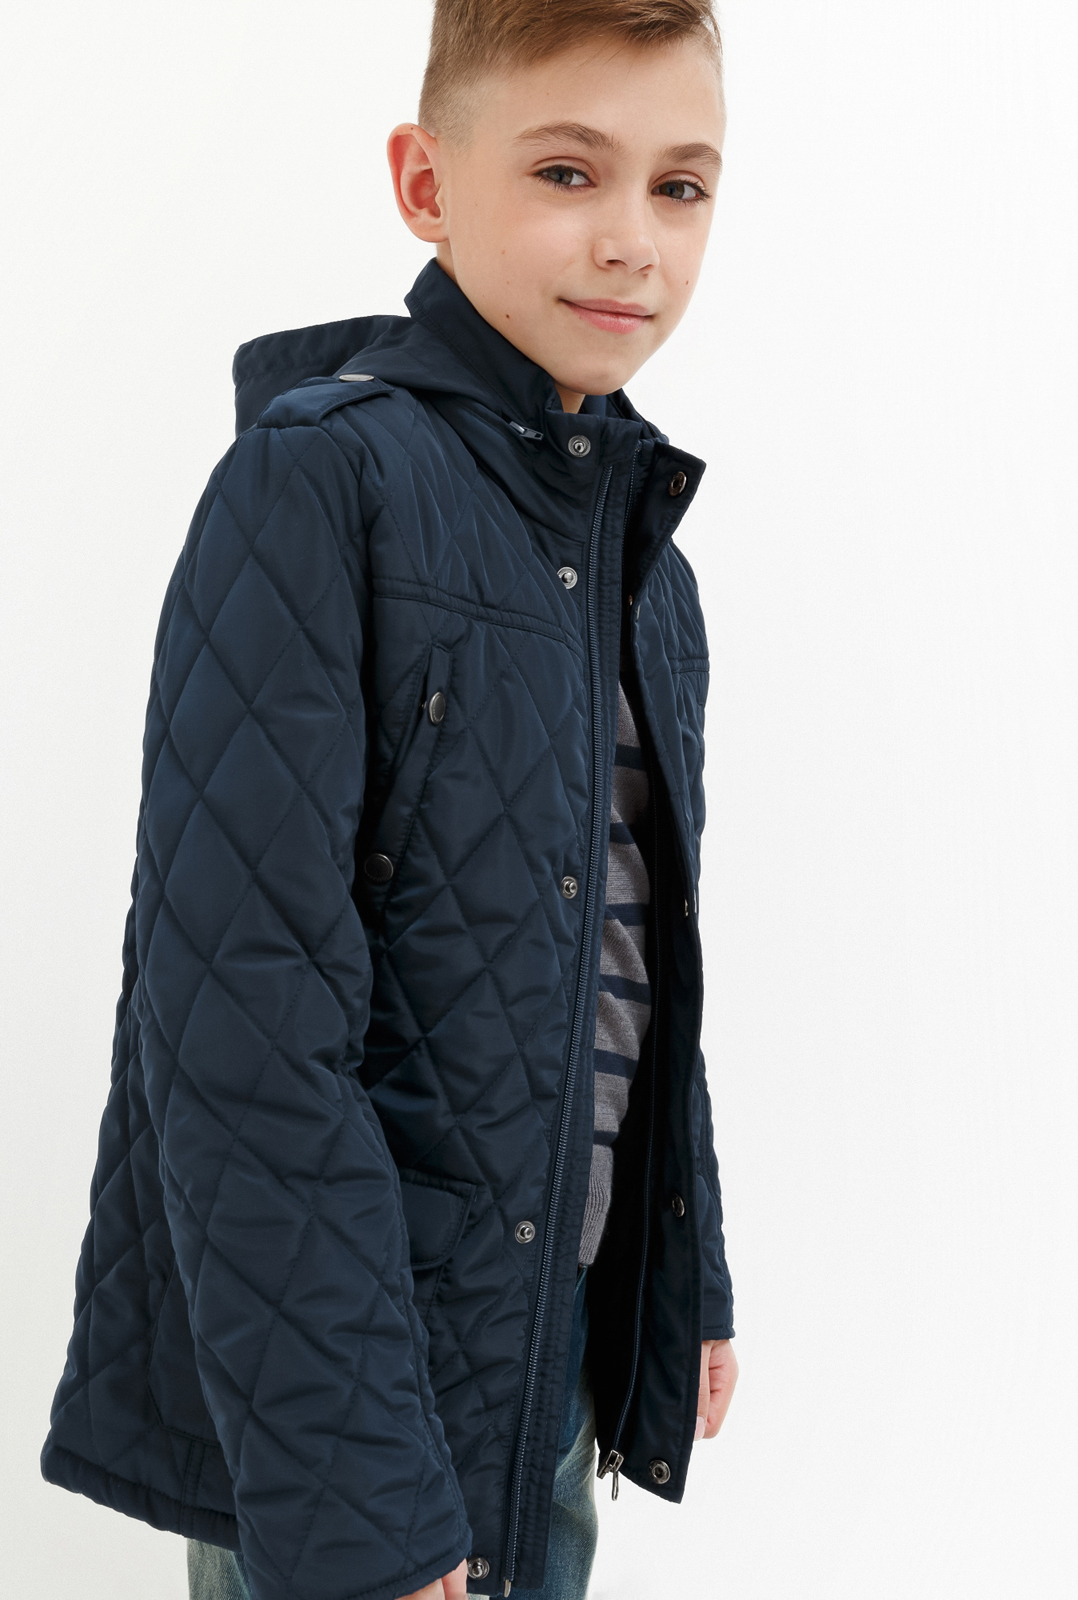 Куртка для мальчика Acoola Jim, цвет: темно-голубой. 20140130026_600. Размер 140